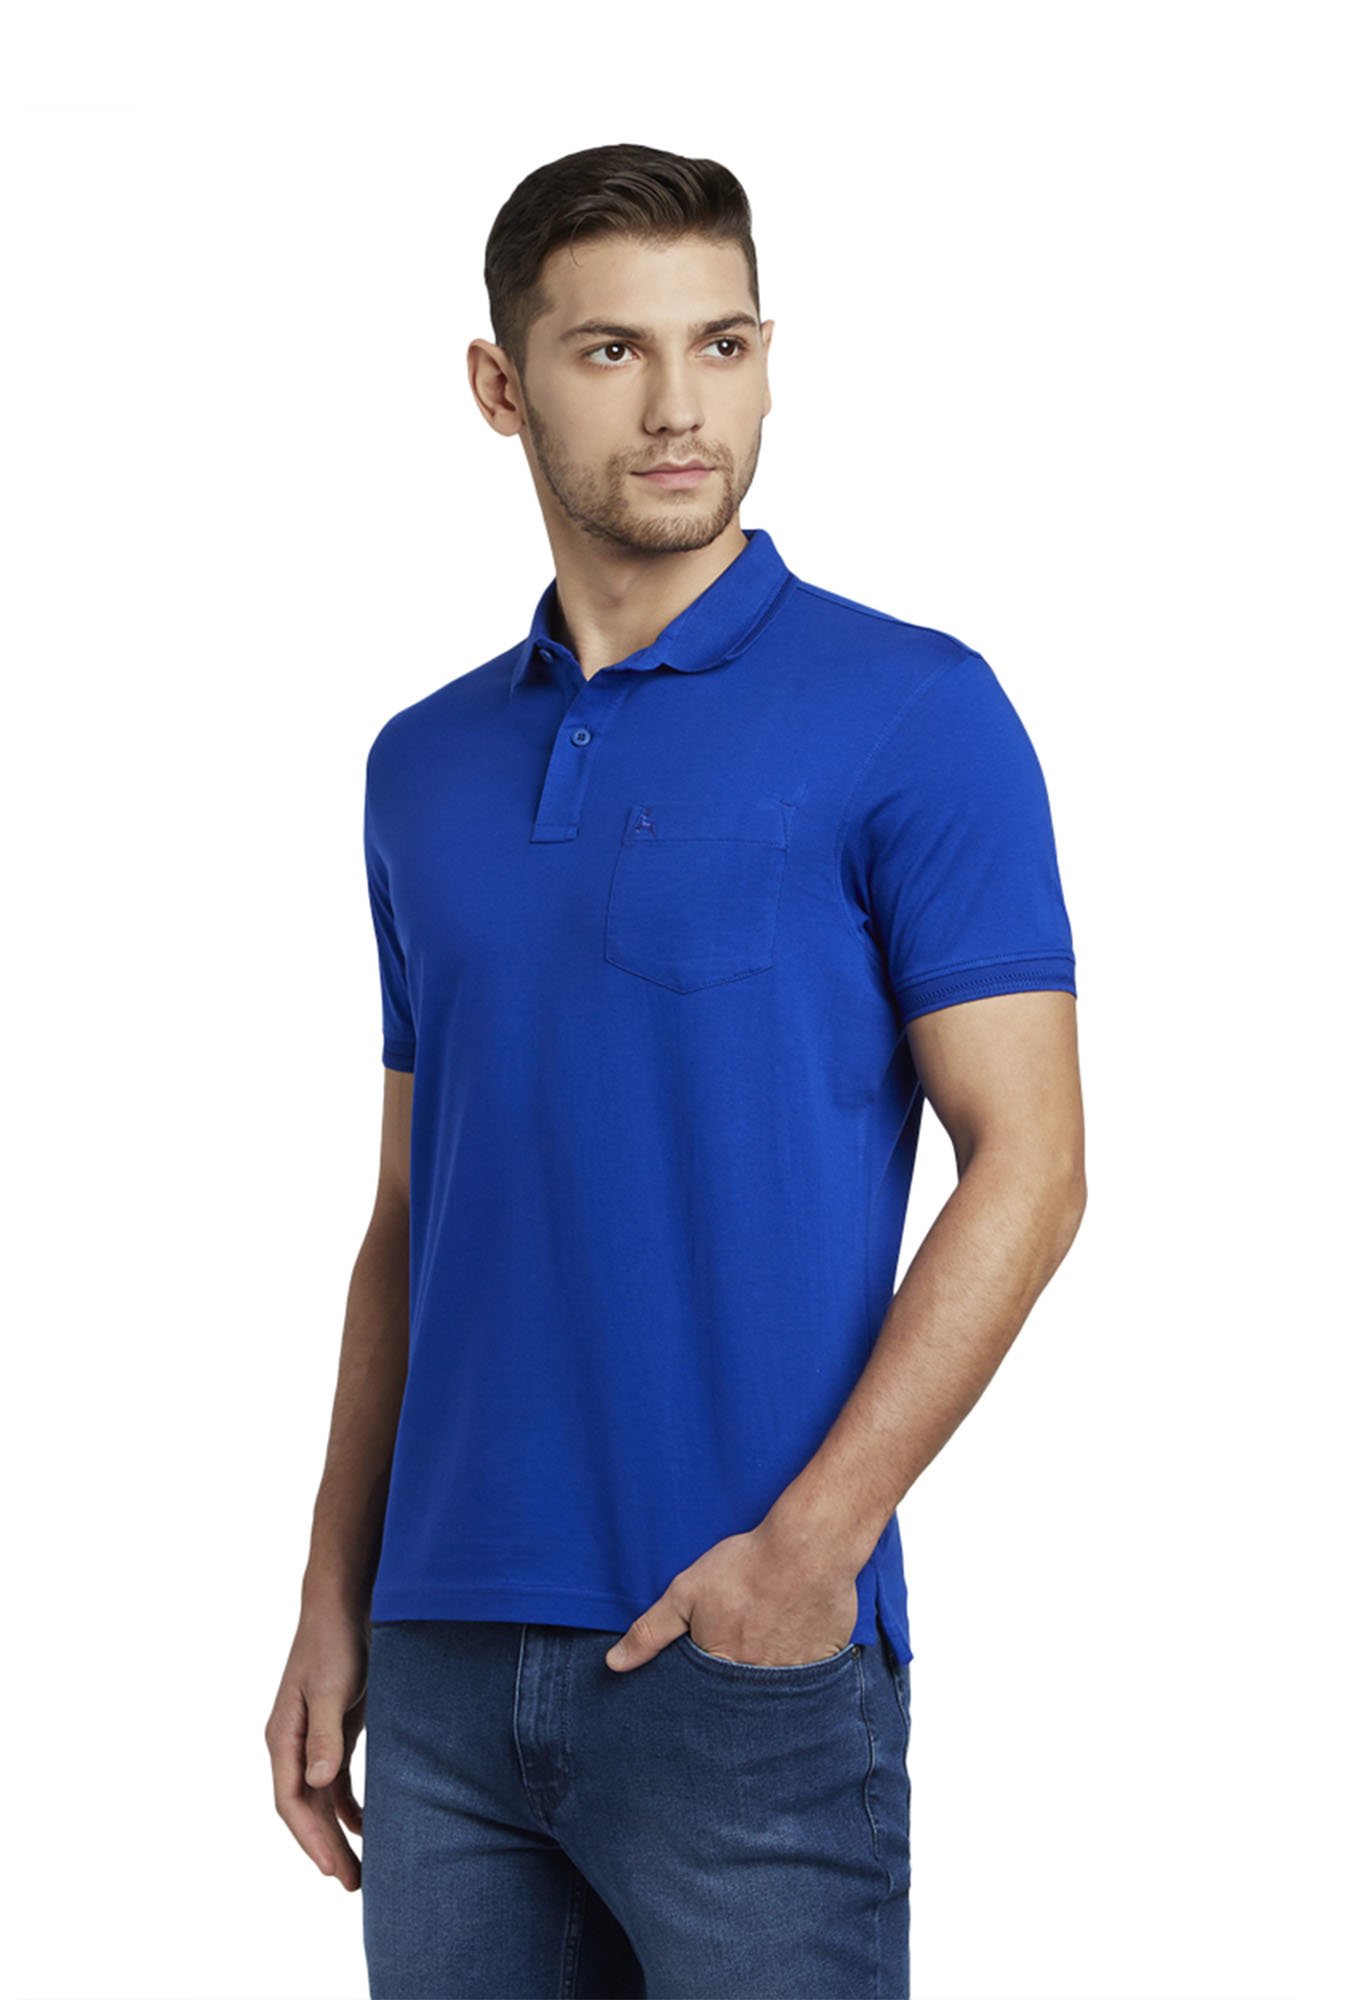 EKFX Blue Striped Polo Tshirts, Half Sleeves